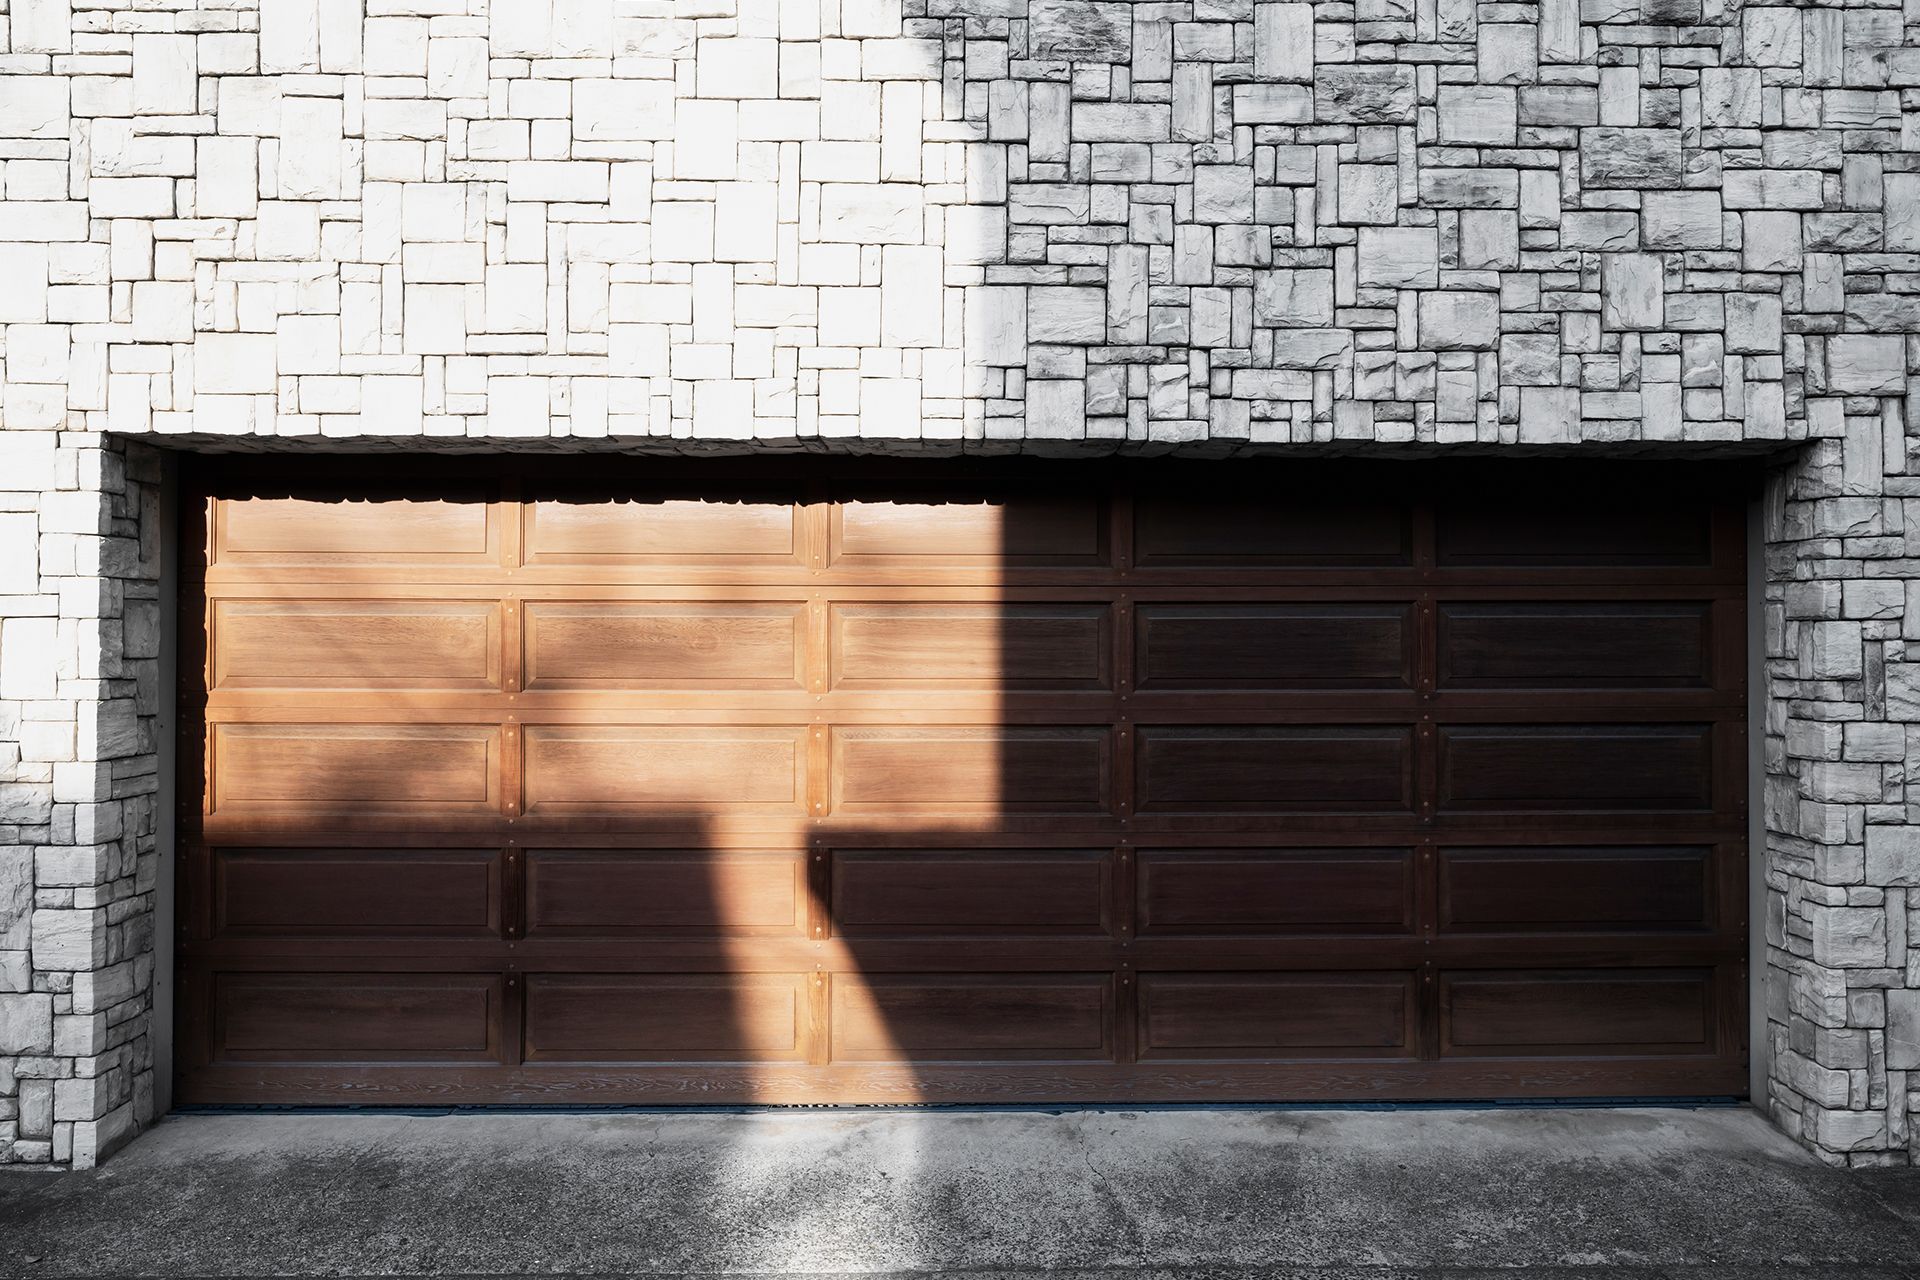  Professional Garage Door Repairs